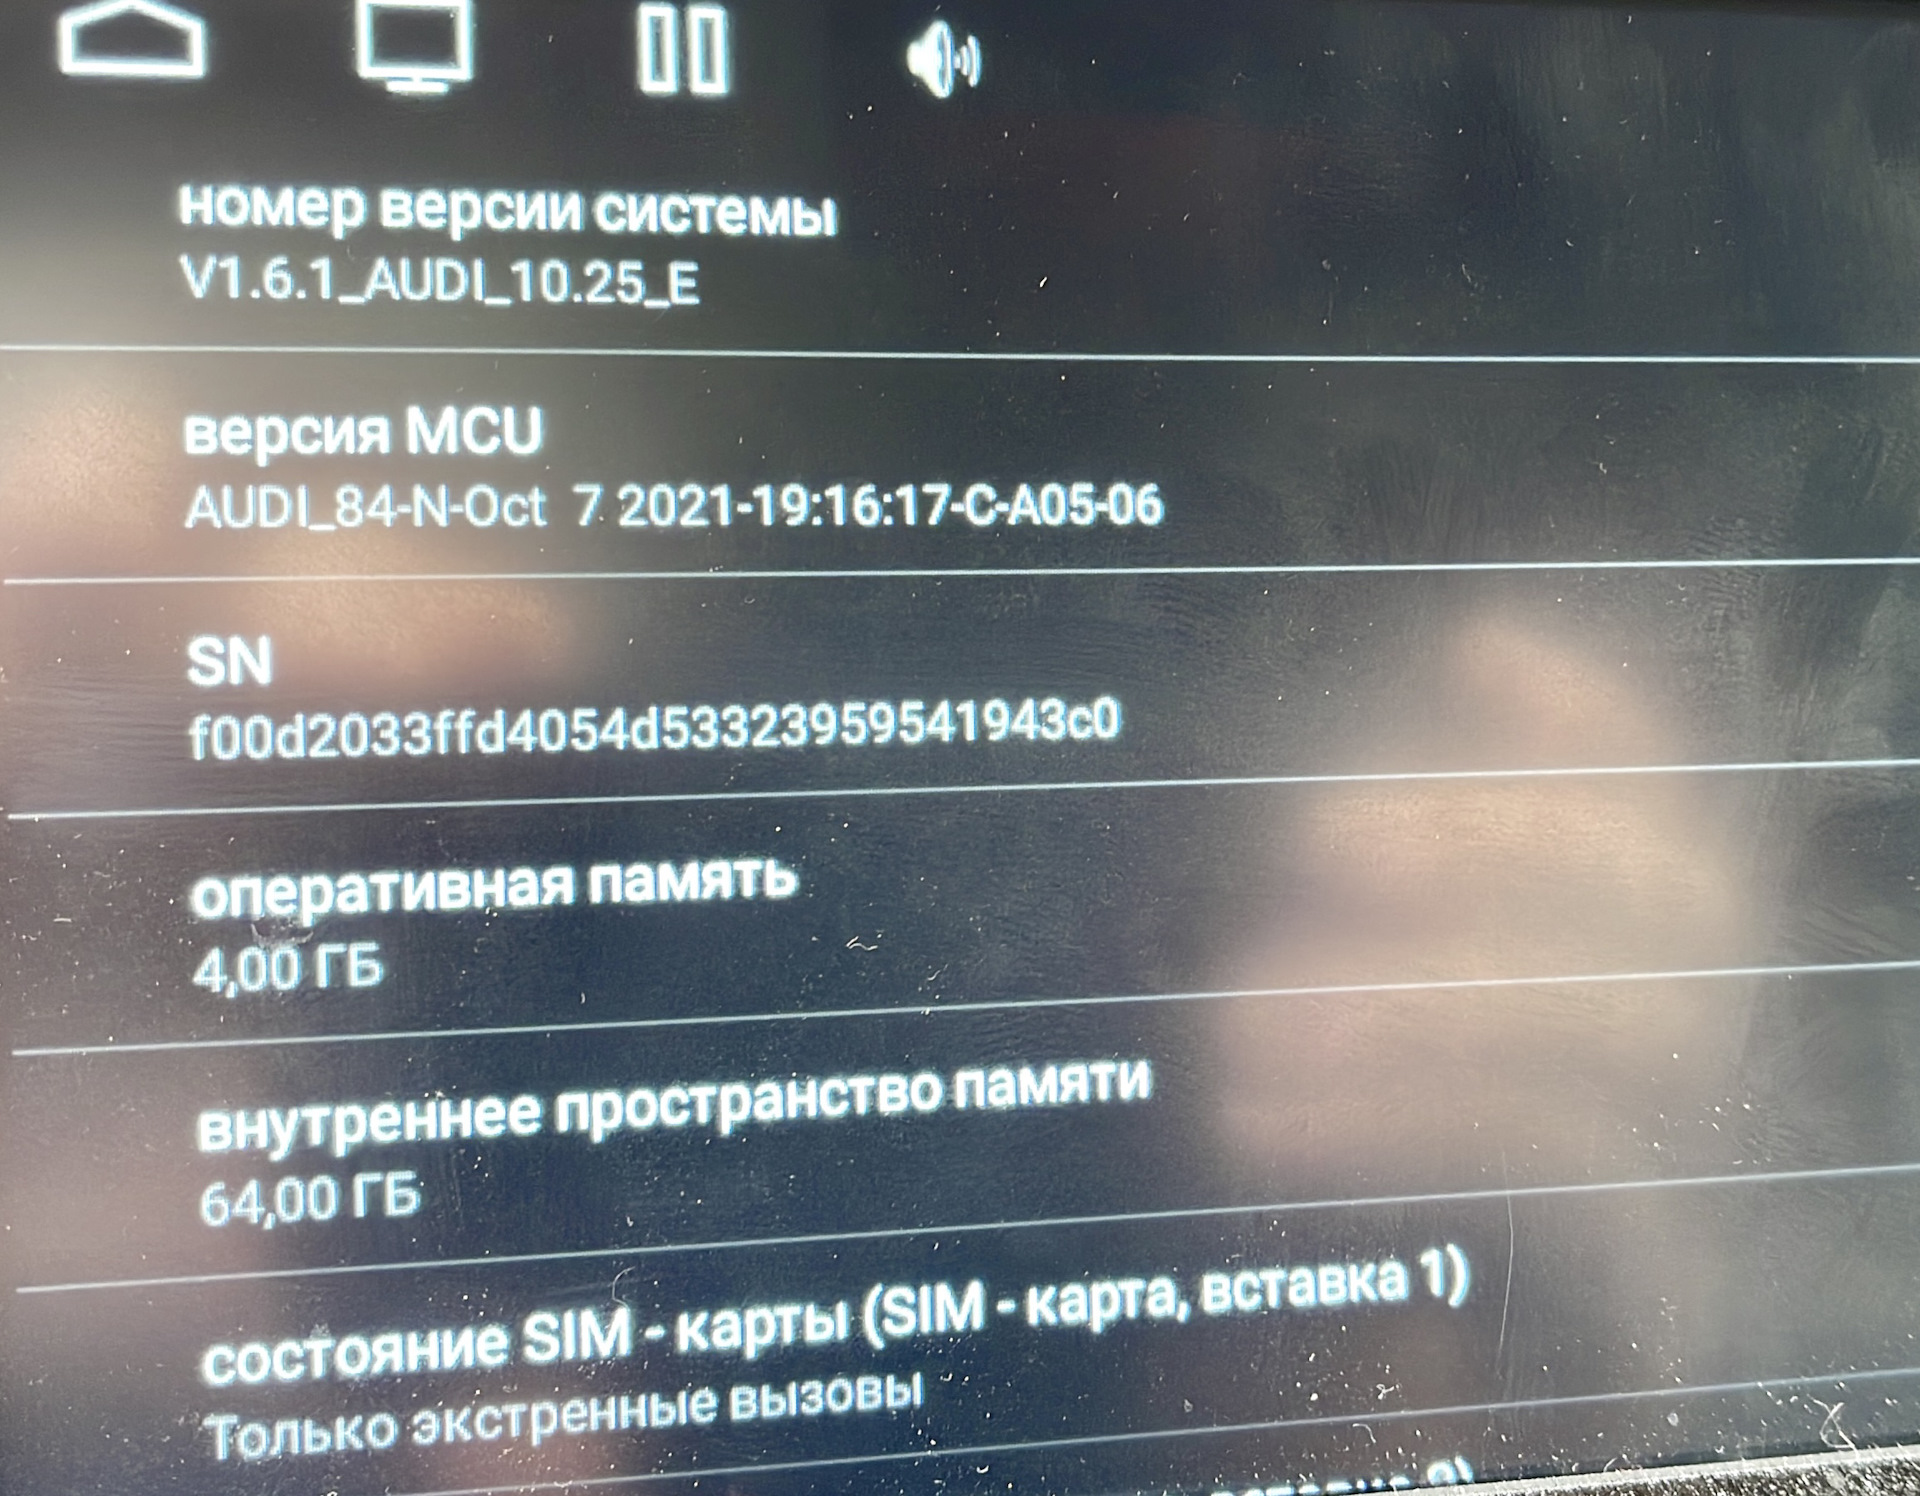 Телеграмм на андроиде не обновляется фото 91